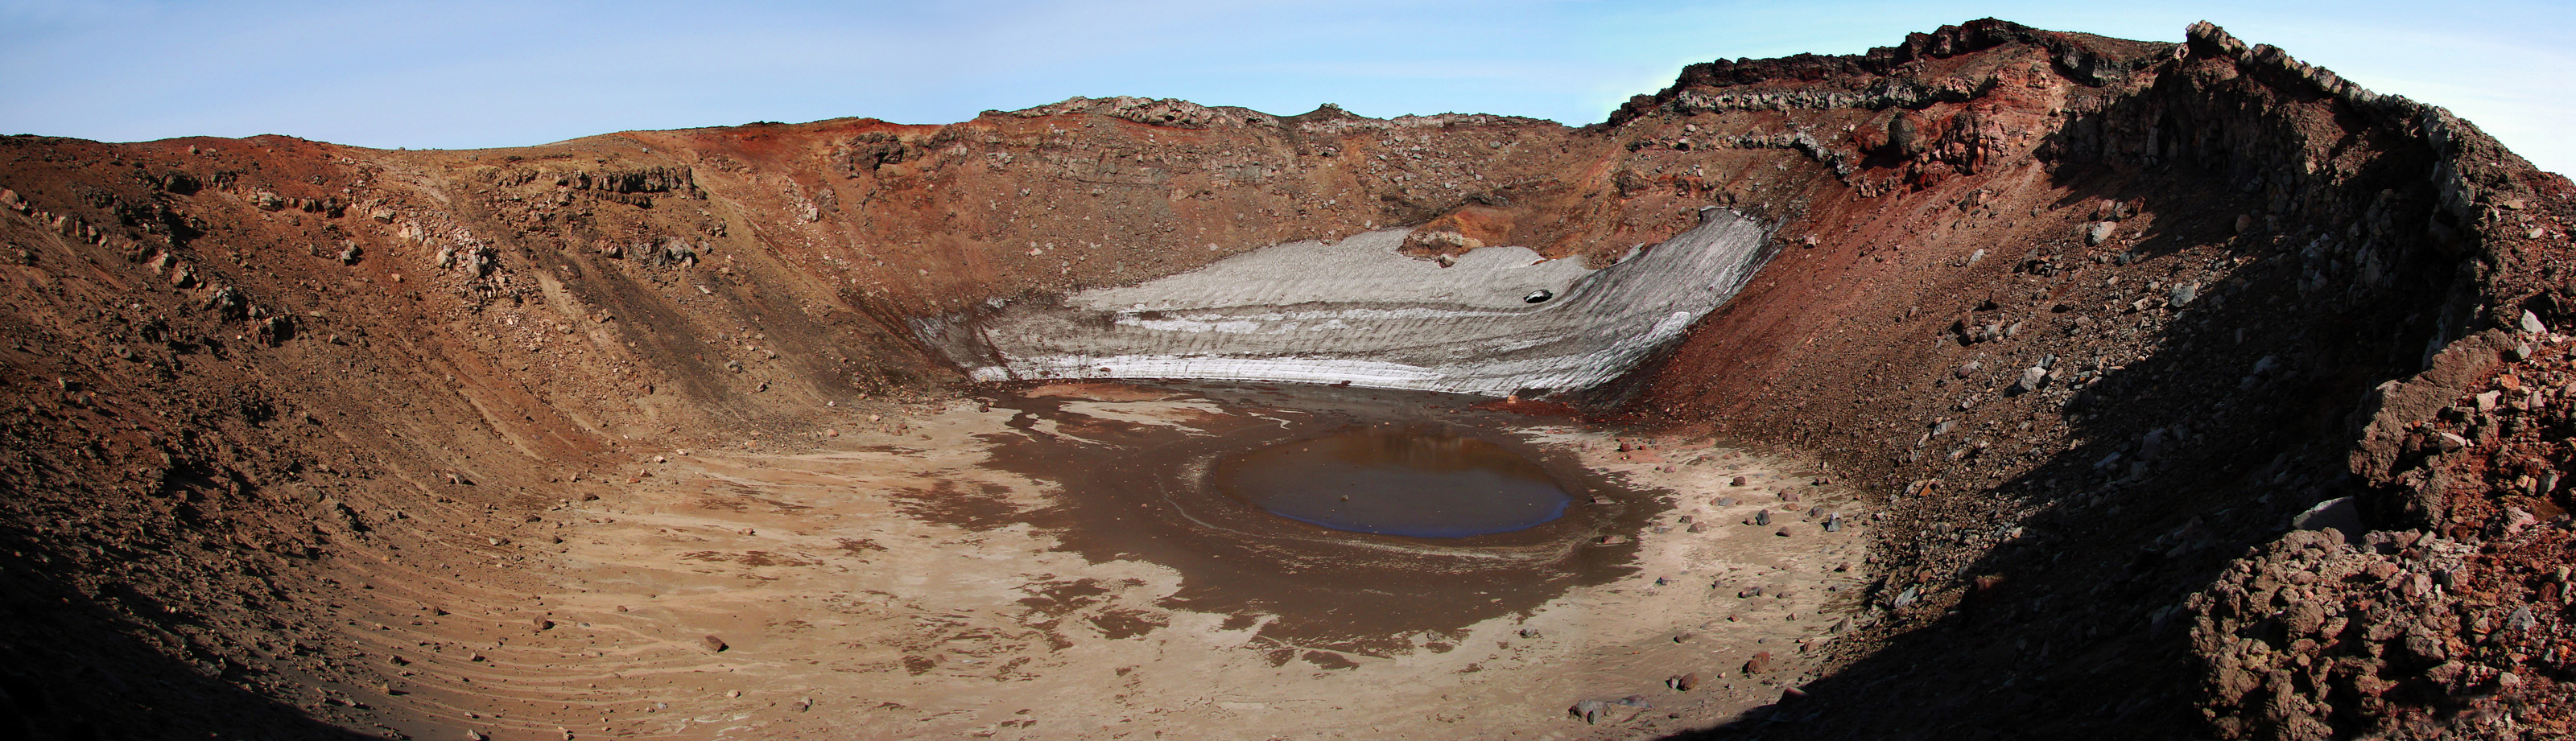 Один из кратеров вулкана Горелый.